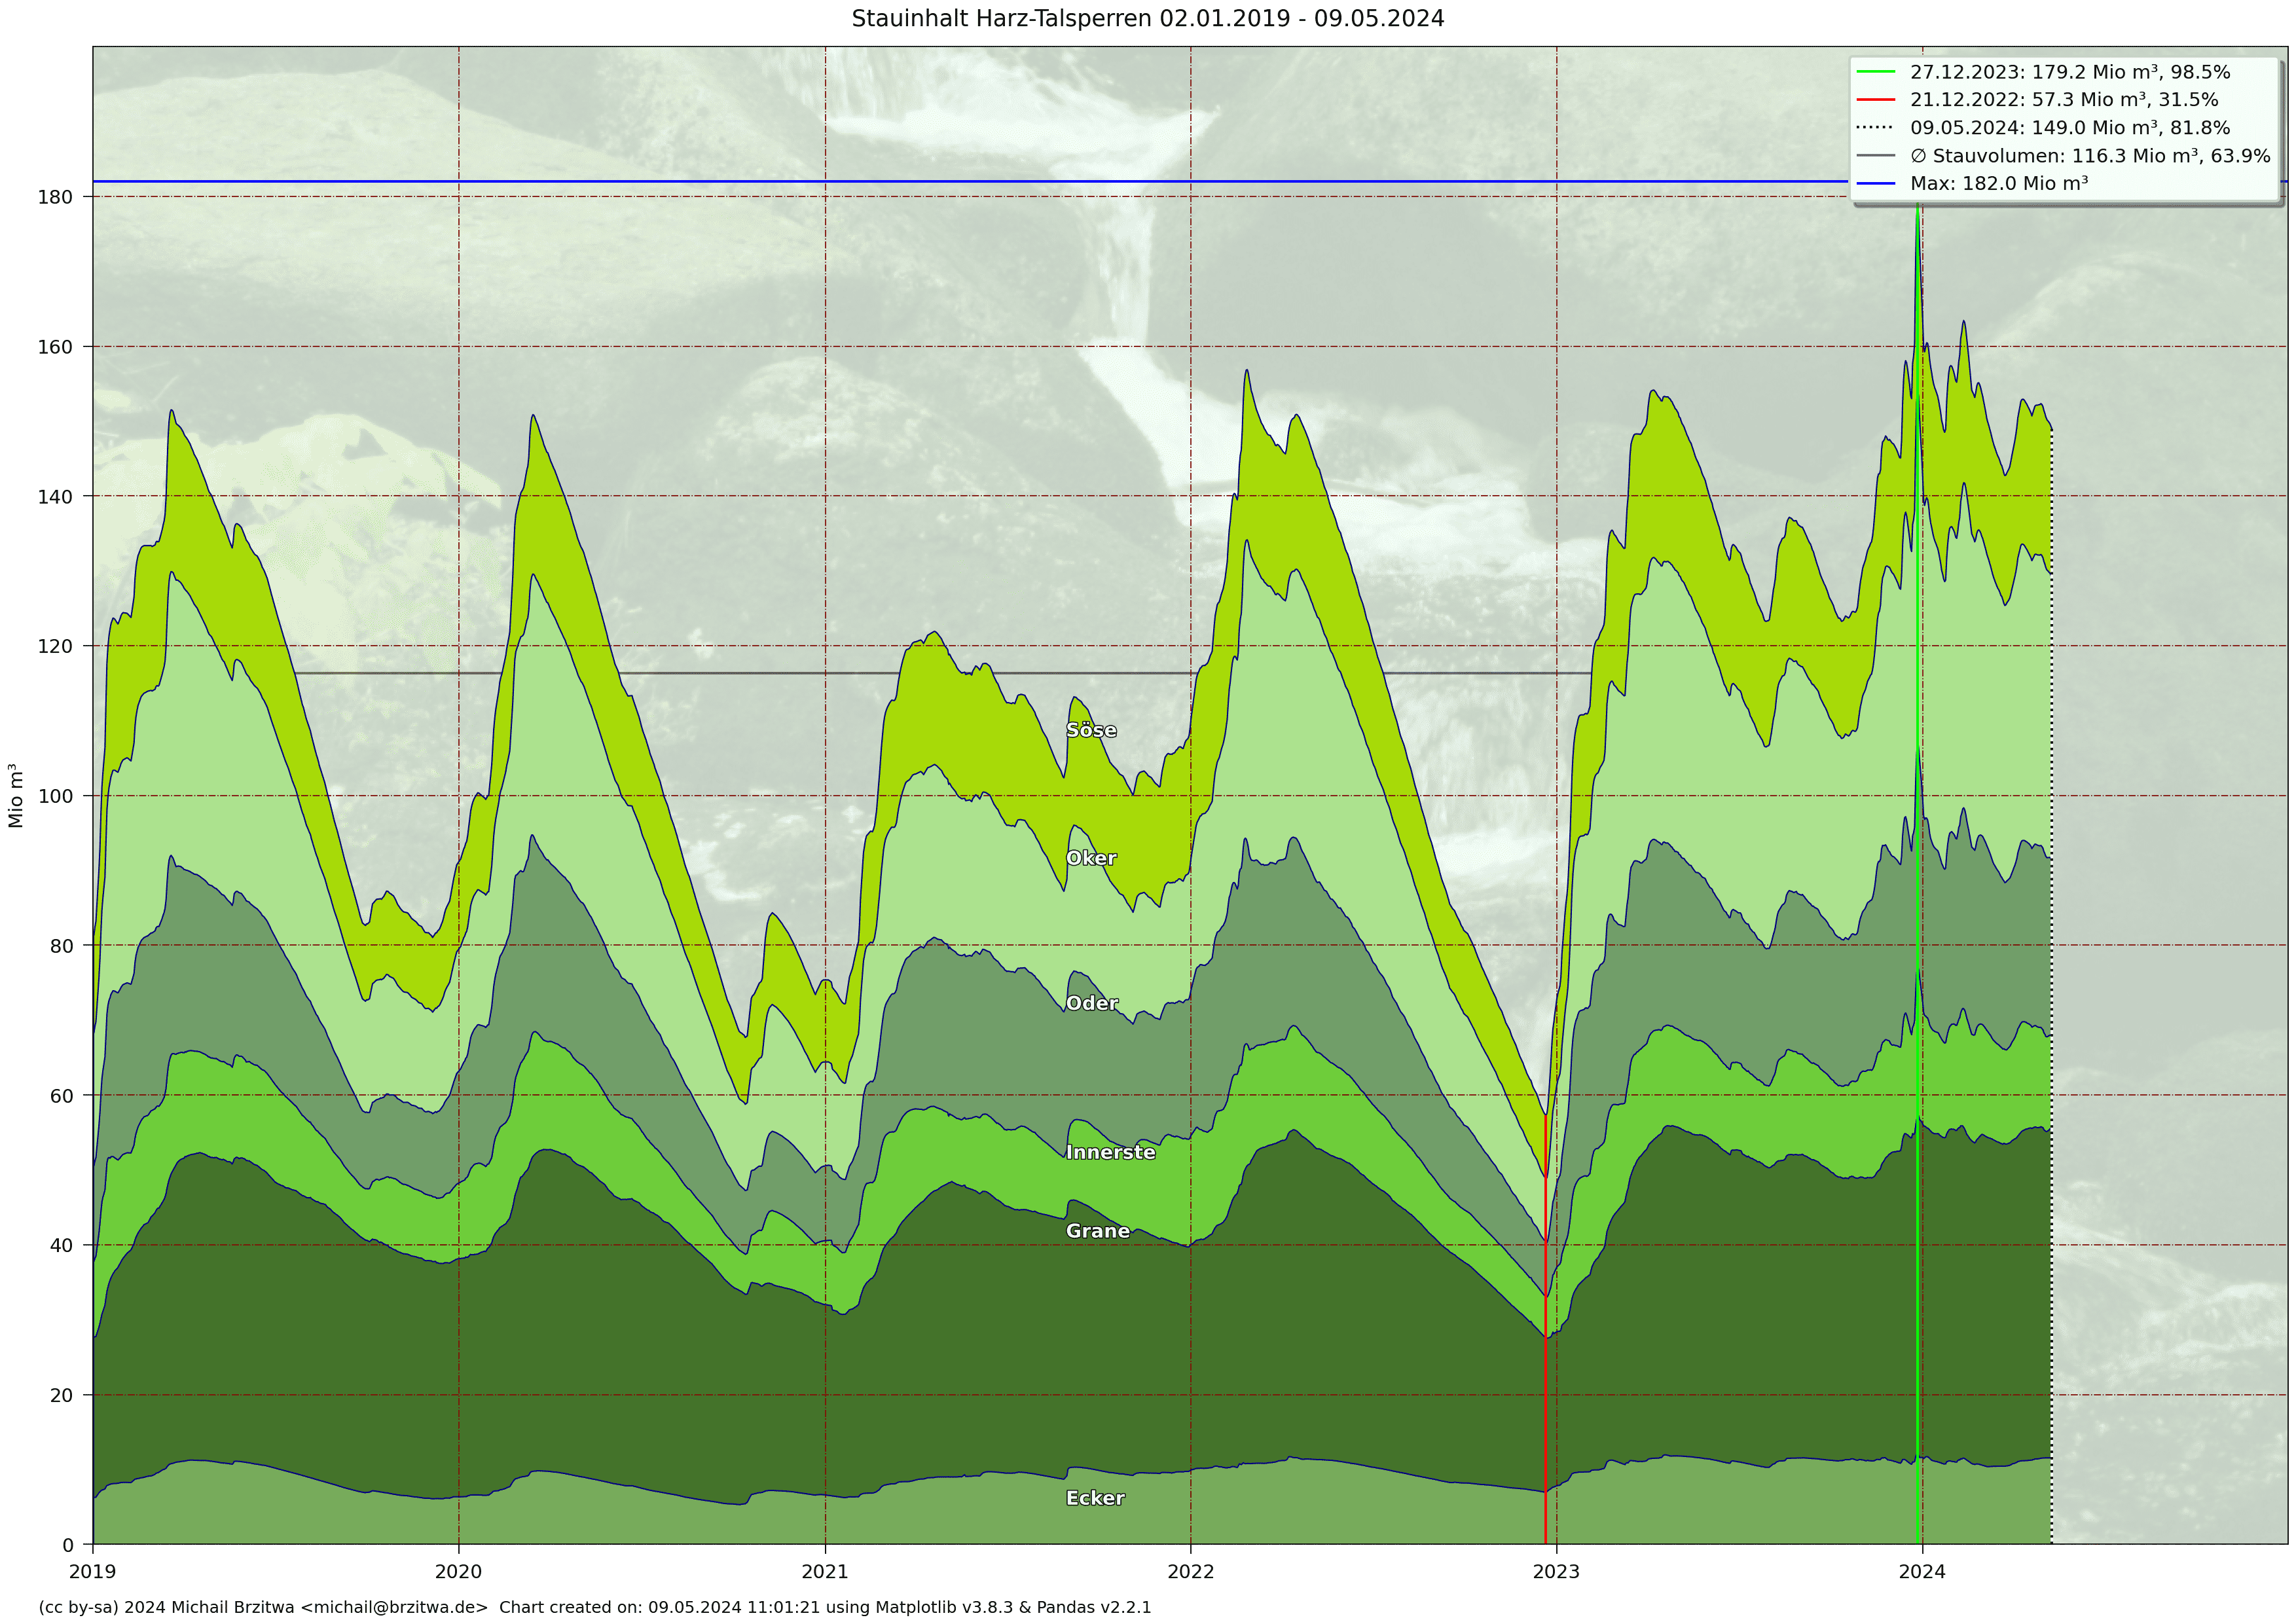 Stauinhalt Harzer Talsperren 2018 - 2021